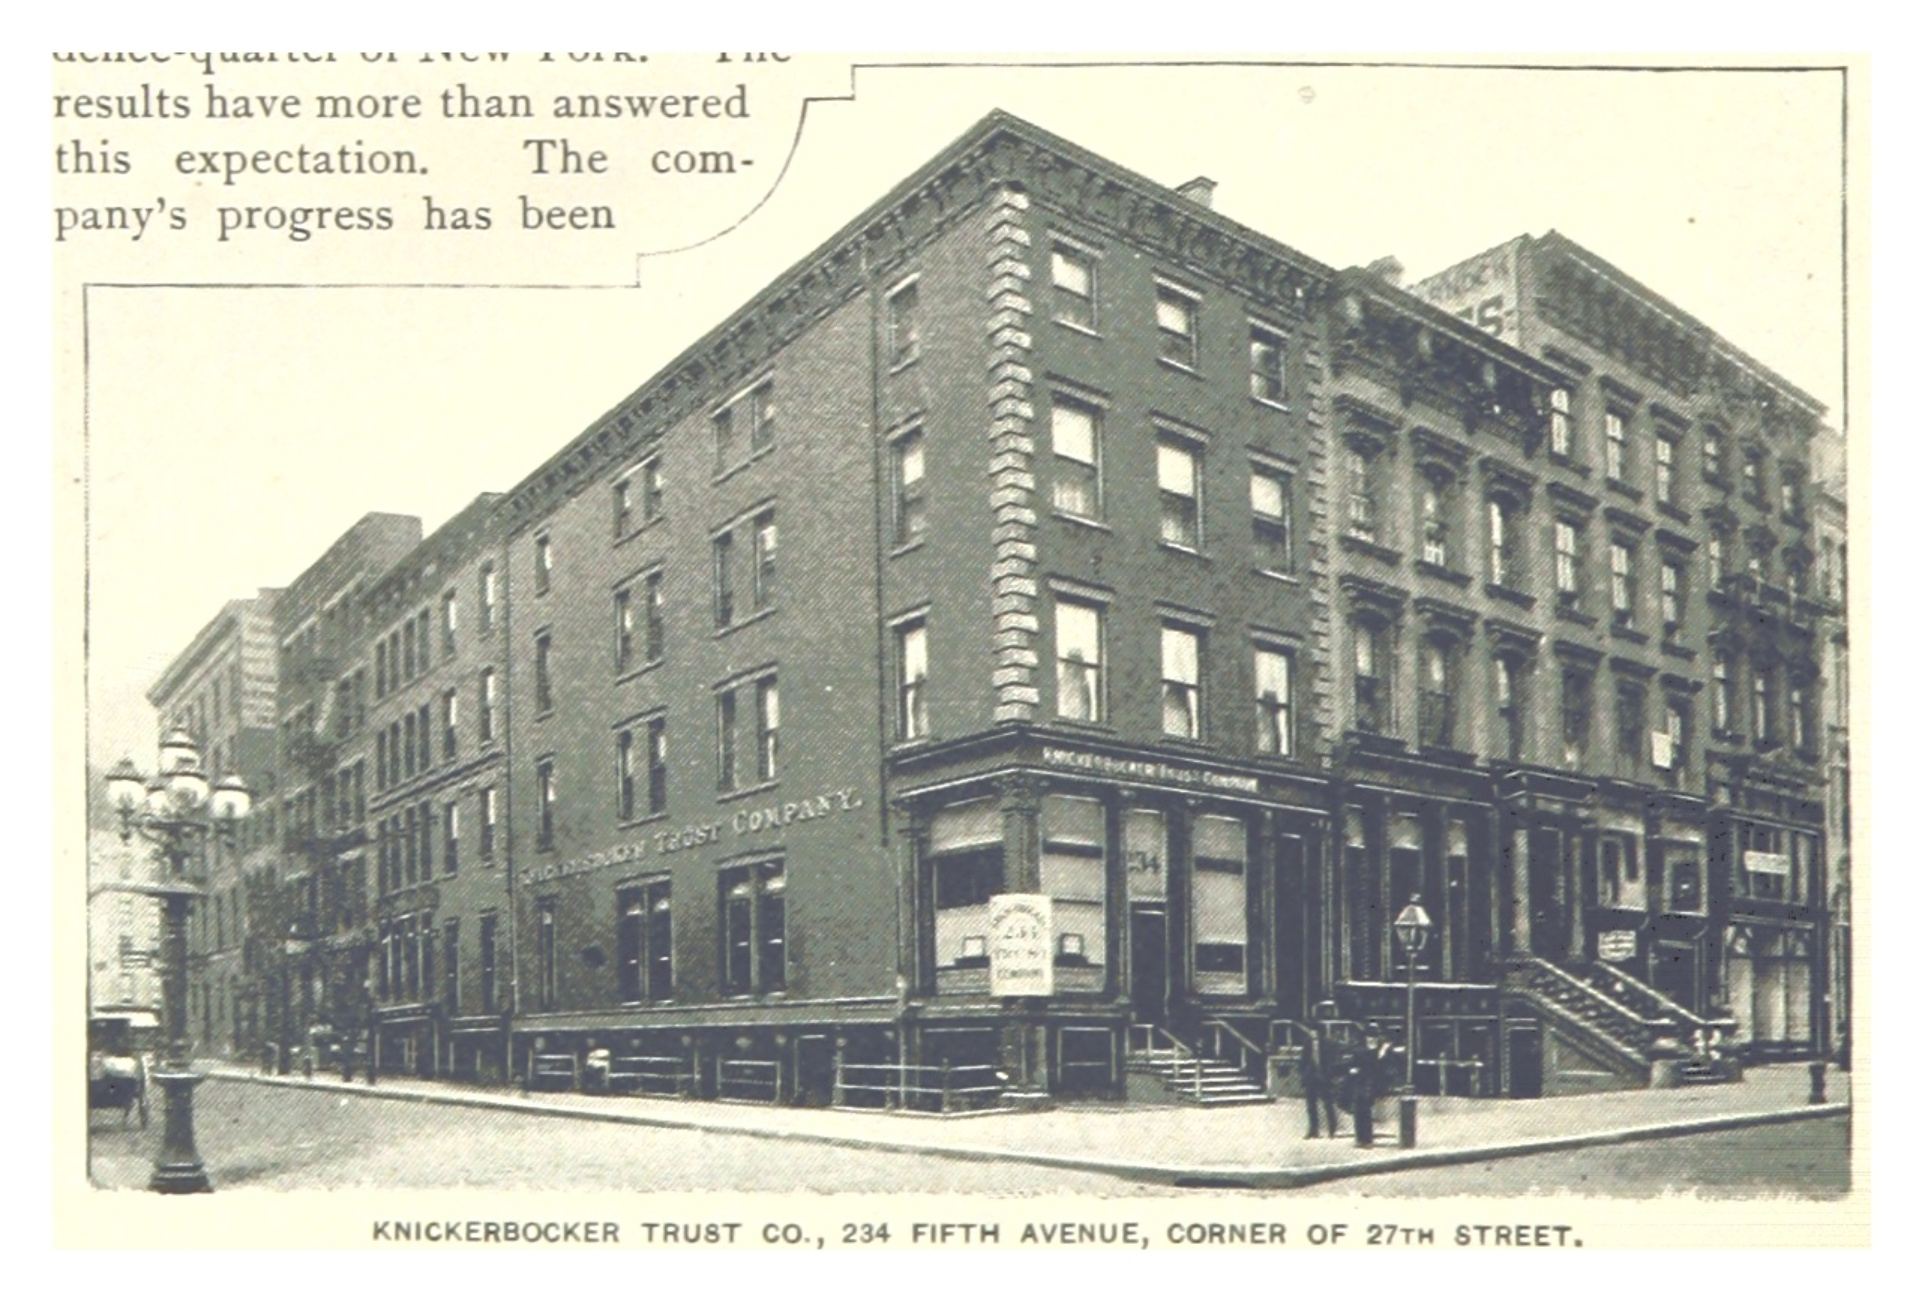 Knickerbocker Trust Co., რომელიც მდებარეობს მეხუთე ავენიუზე და 27-ე ქუჩაზე, კვეთაზე, სადაც არნოლდი ბოლოს ნახეს.